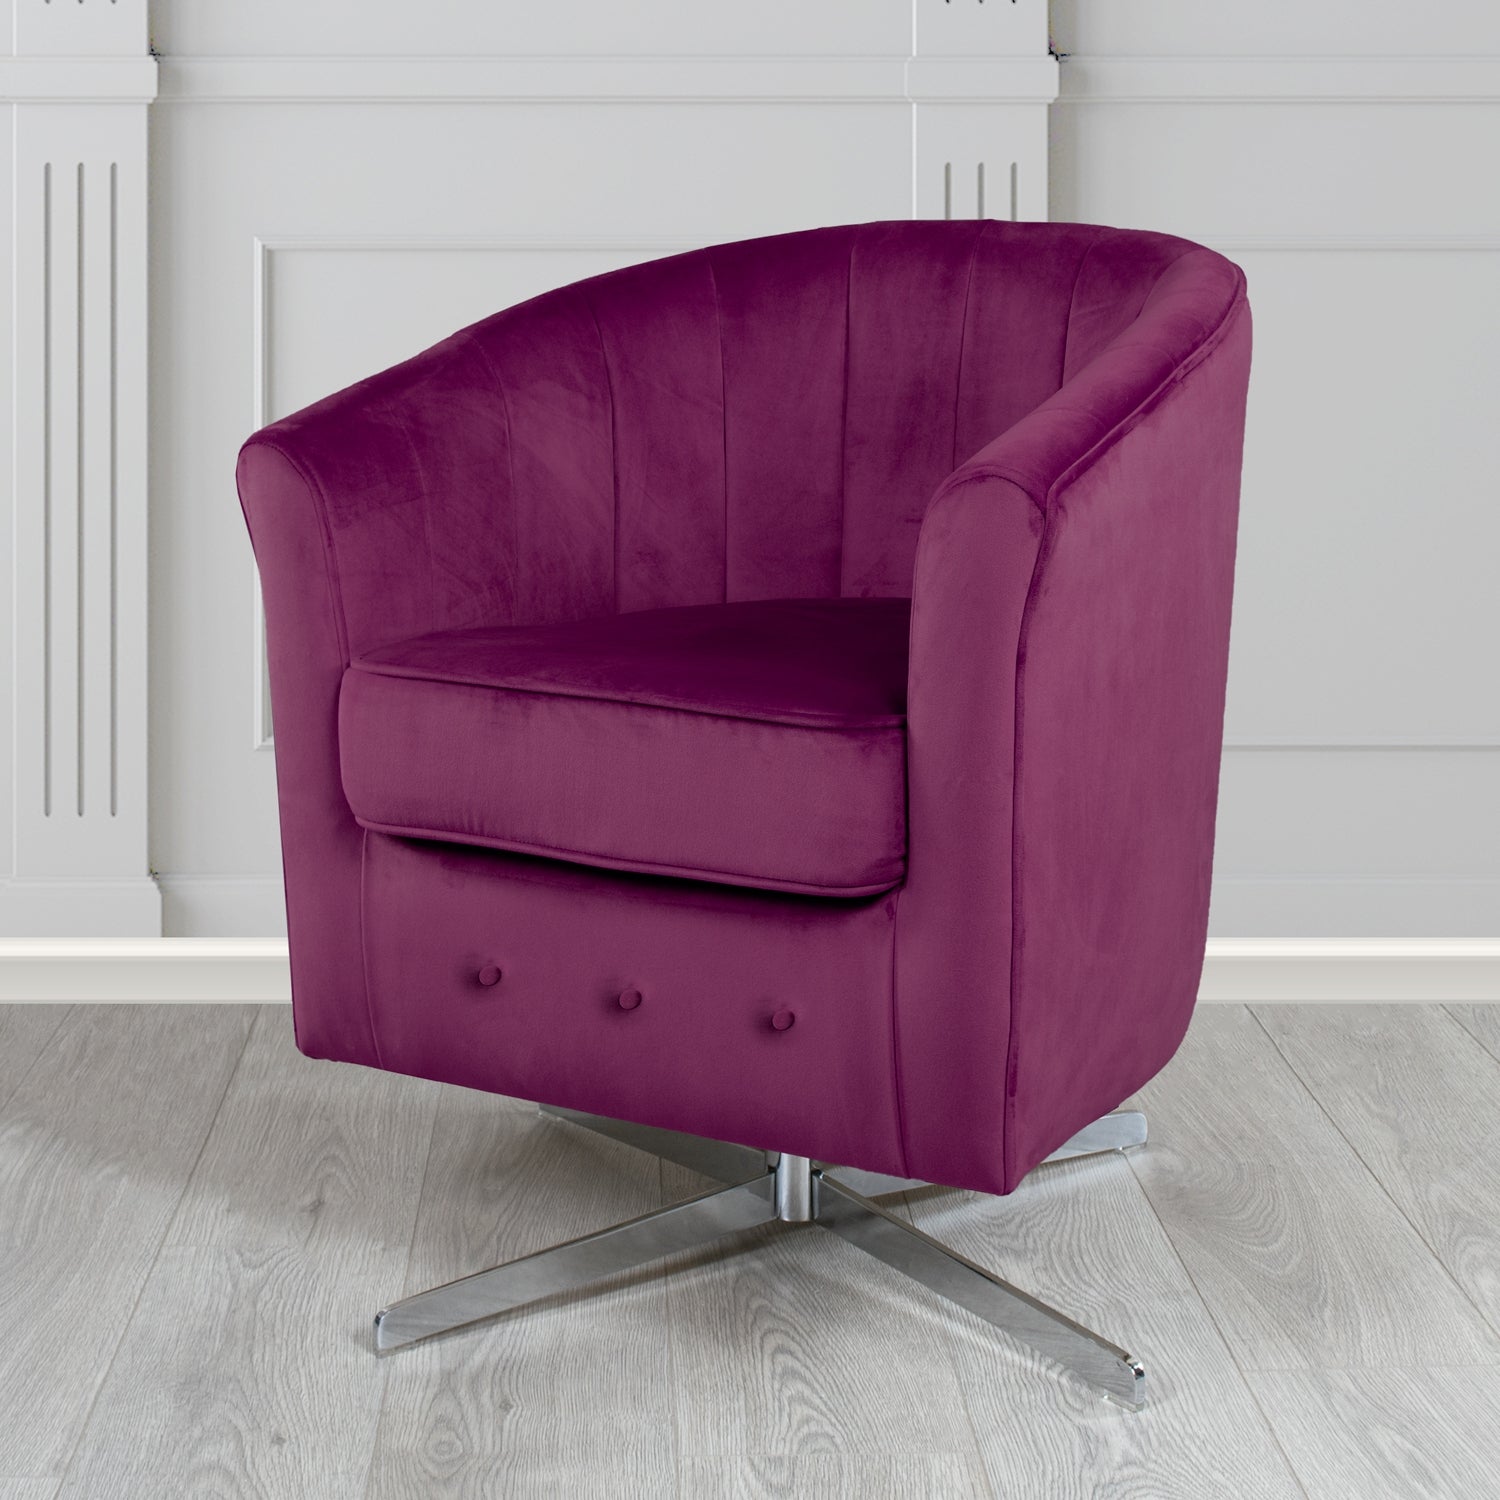 Doha Monaco Amethyst Plain Velvet Fabric Swivel Tub Chair - The Tub Chair Shop